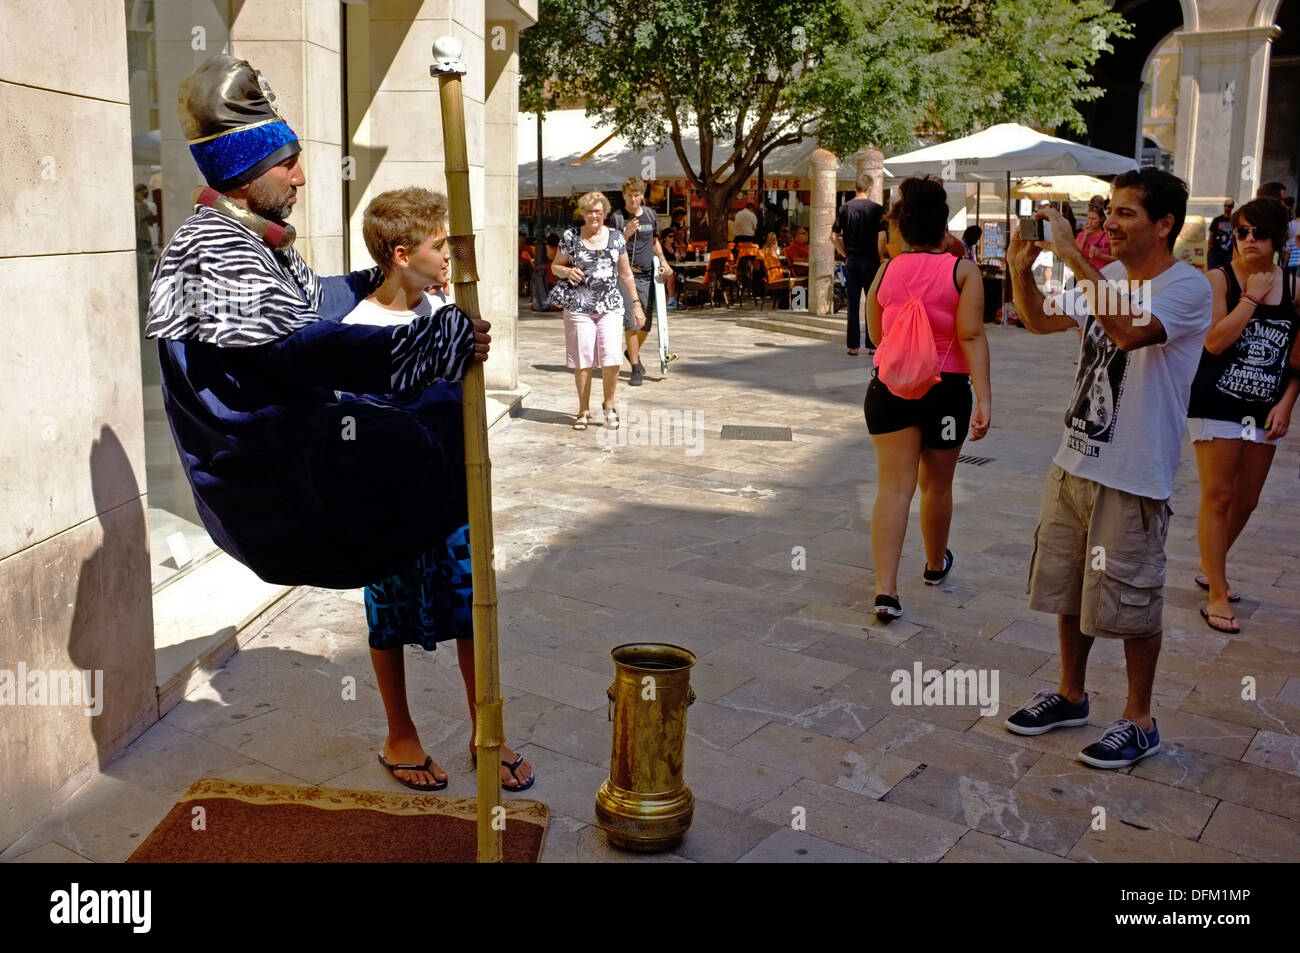 Un garçon pose pour une photo à côté d'un "fakir" à Palma, Majorque Banque D'Images